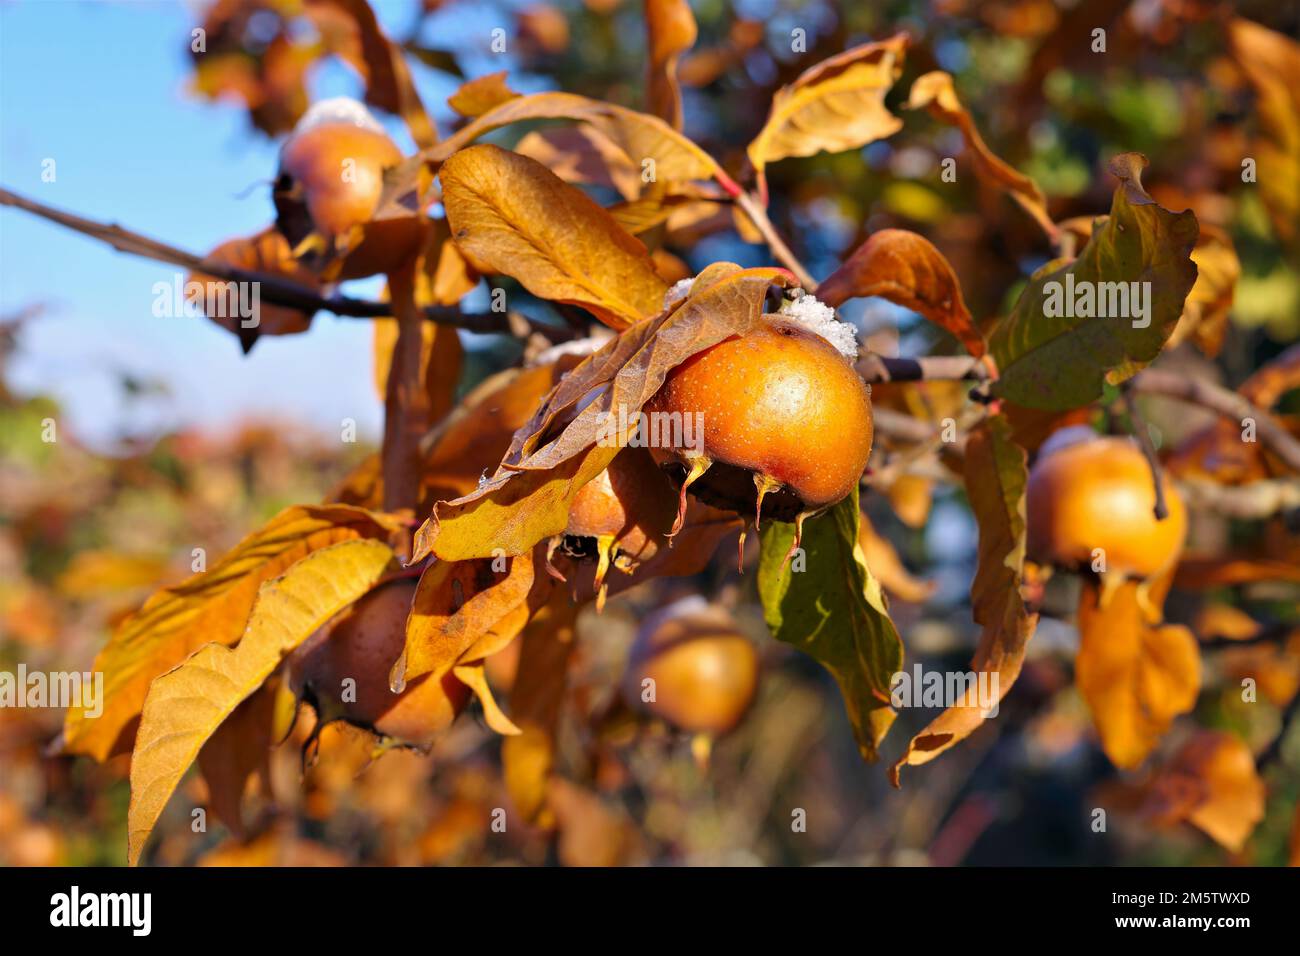 many common medlar on tree in autumn Stock Photo